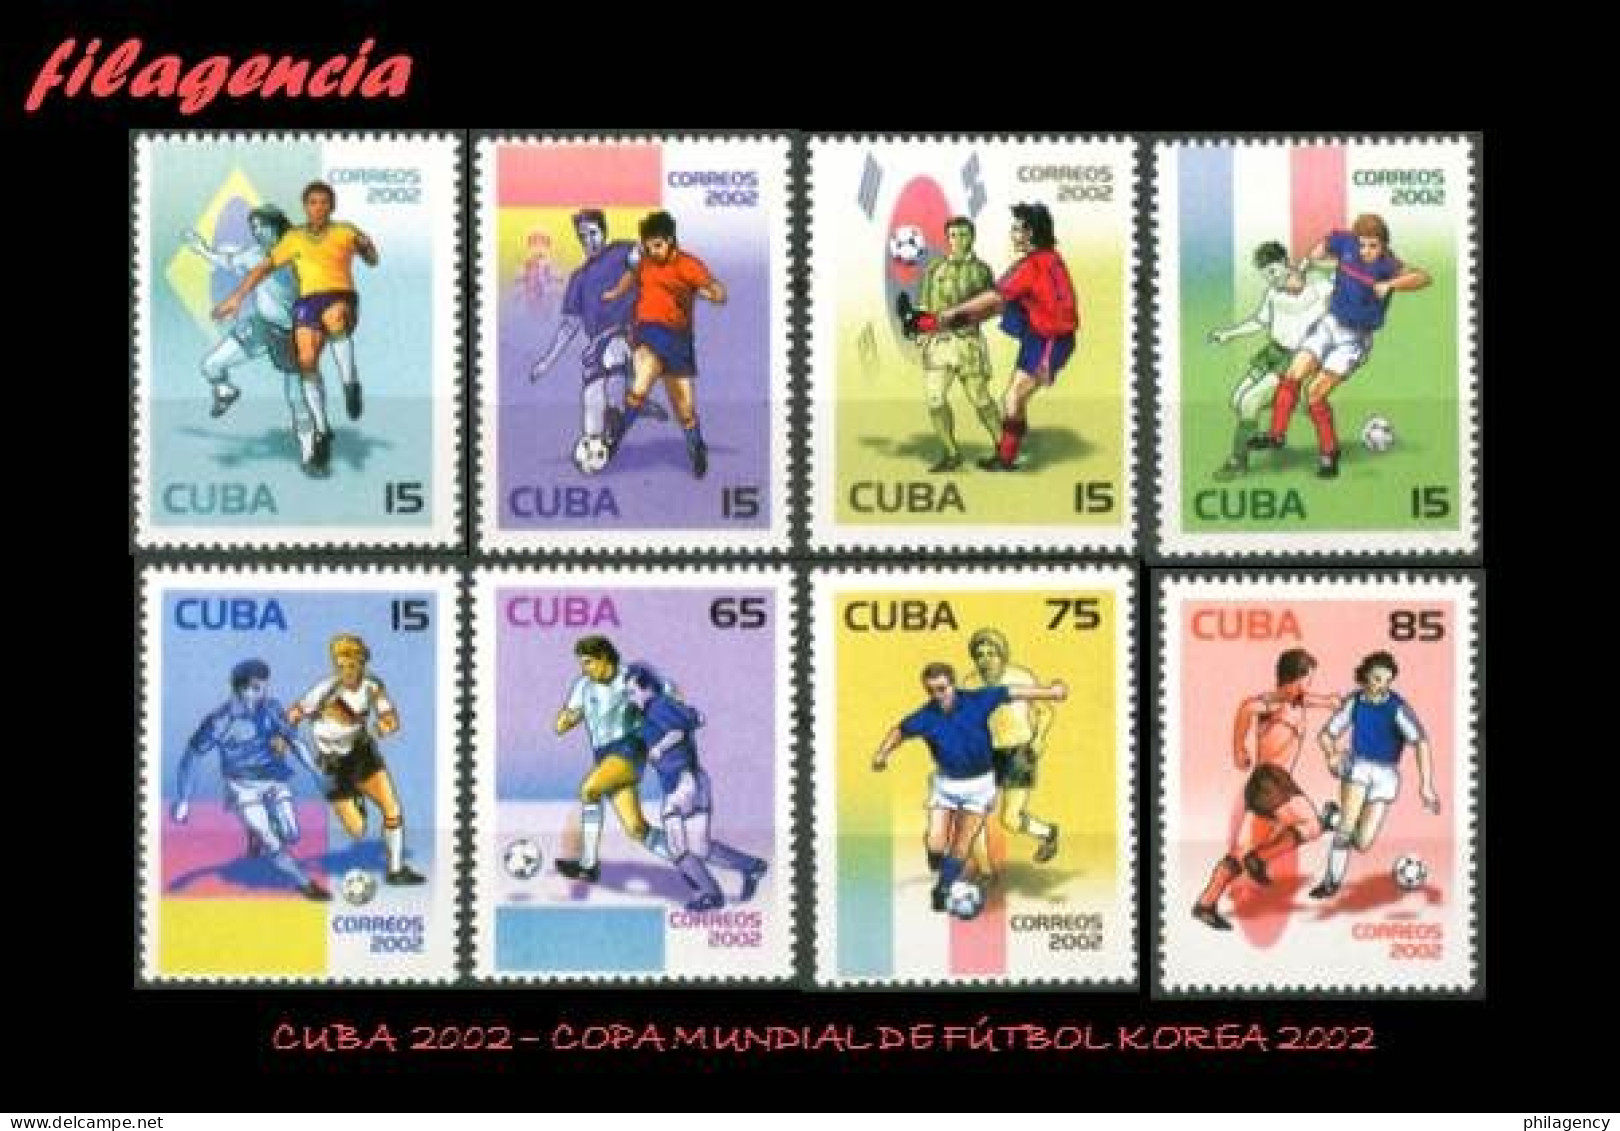 CUBA MINT. 2002-06 COPA MUNDIAL DE FÚTBOL KOREA 2002 - Nuevos